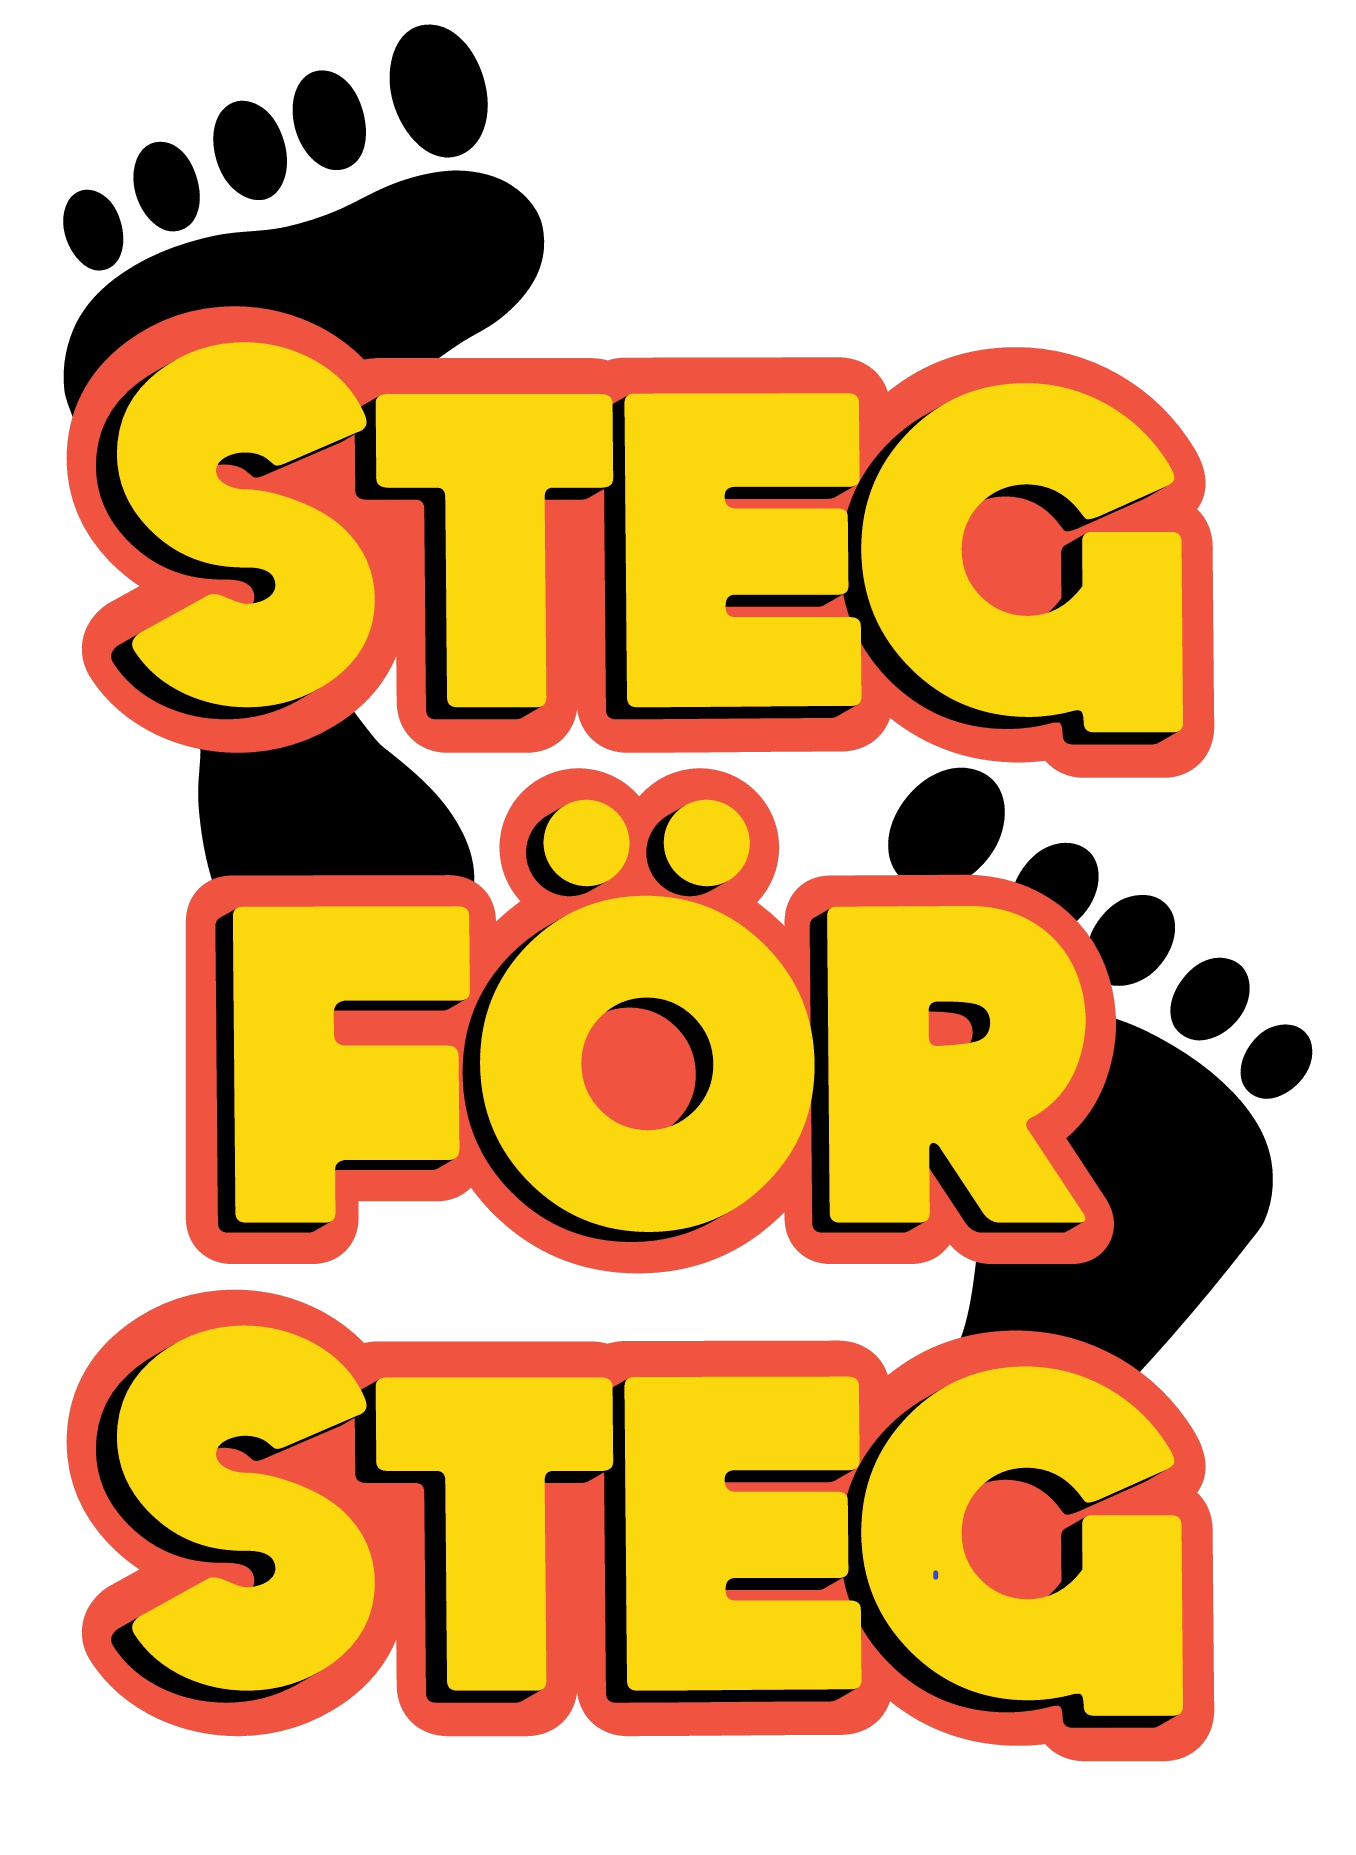 Steg för Stegs-logotyp.